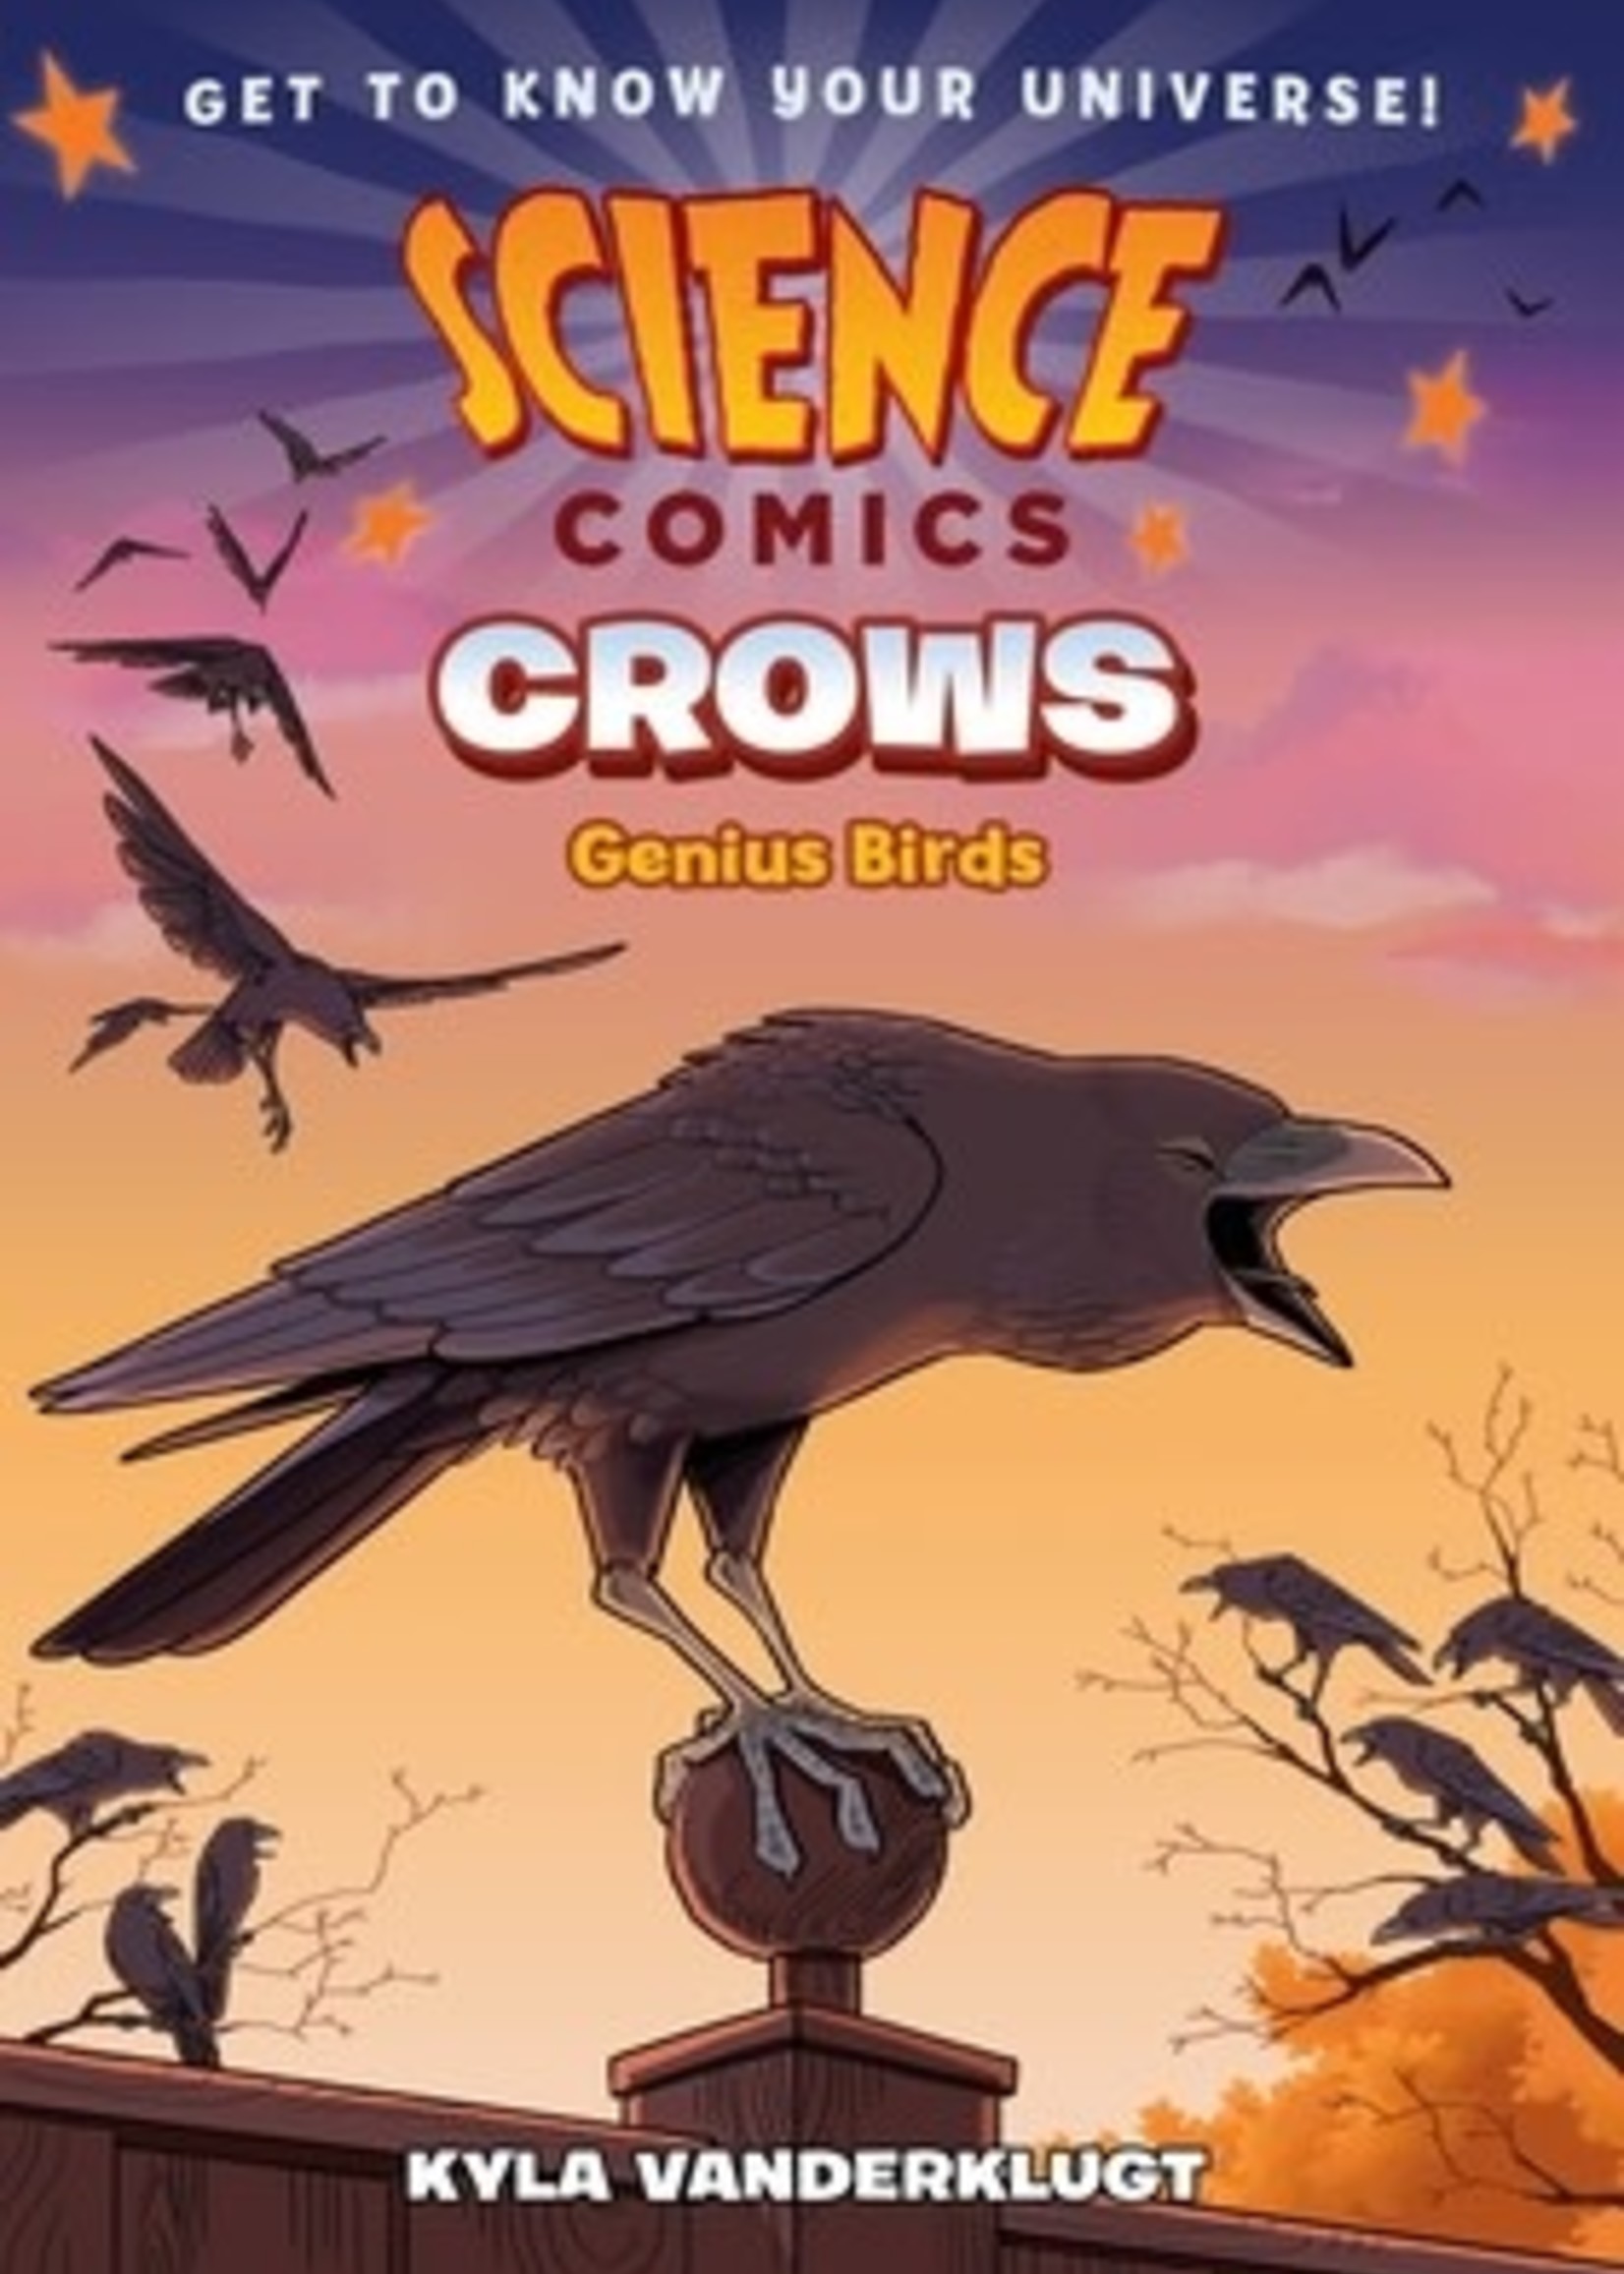 Crows: Genius Birds by Kyla Vanderklugt